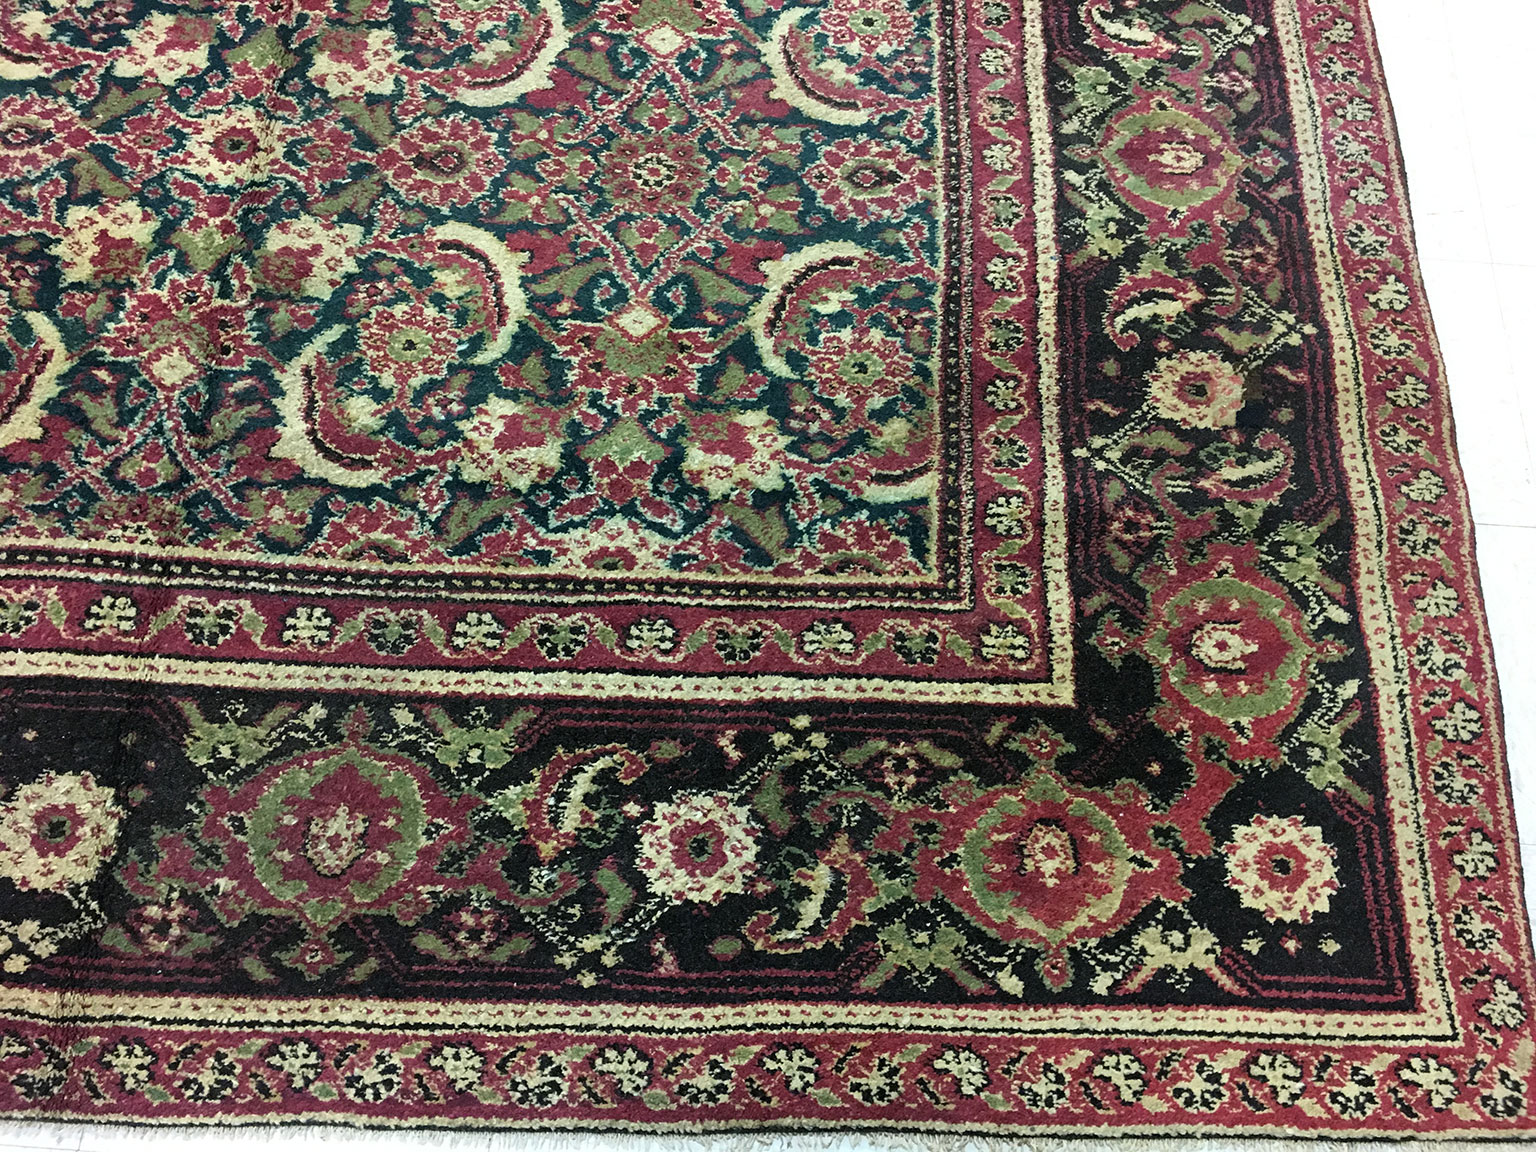 Antique agra Carpet - # 52989